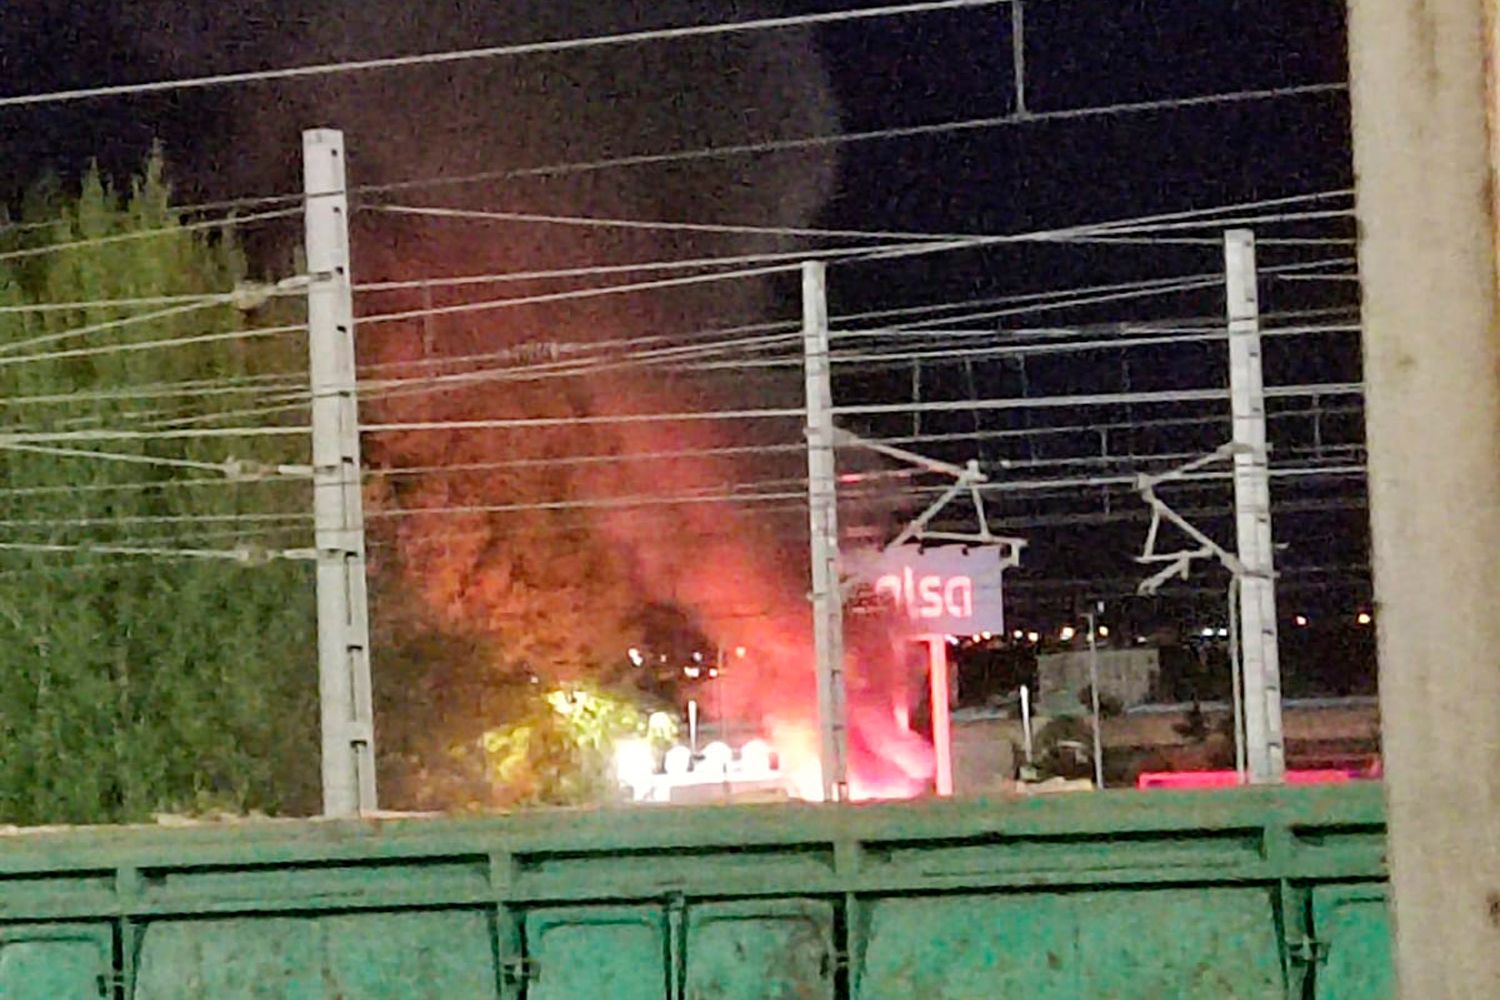 Un fallo eléctrico en un microbus causa el incendio del mismo en el garaje de Alsa en León